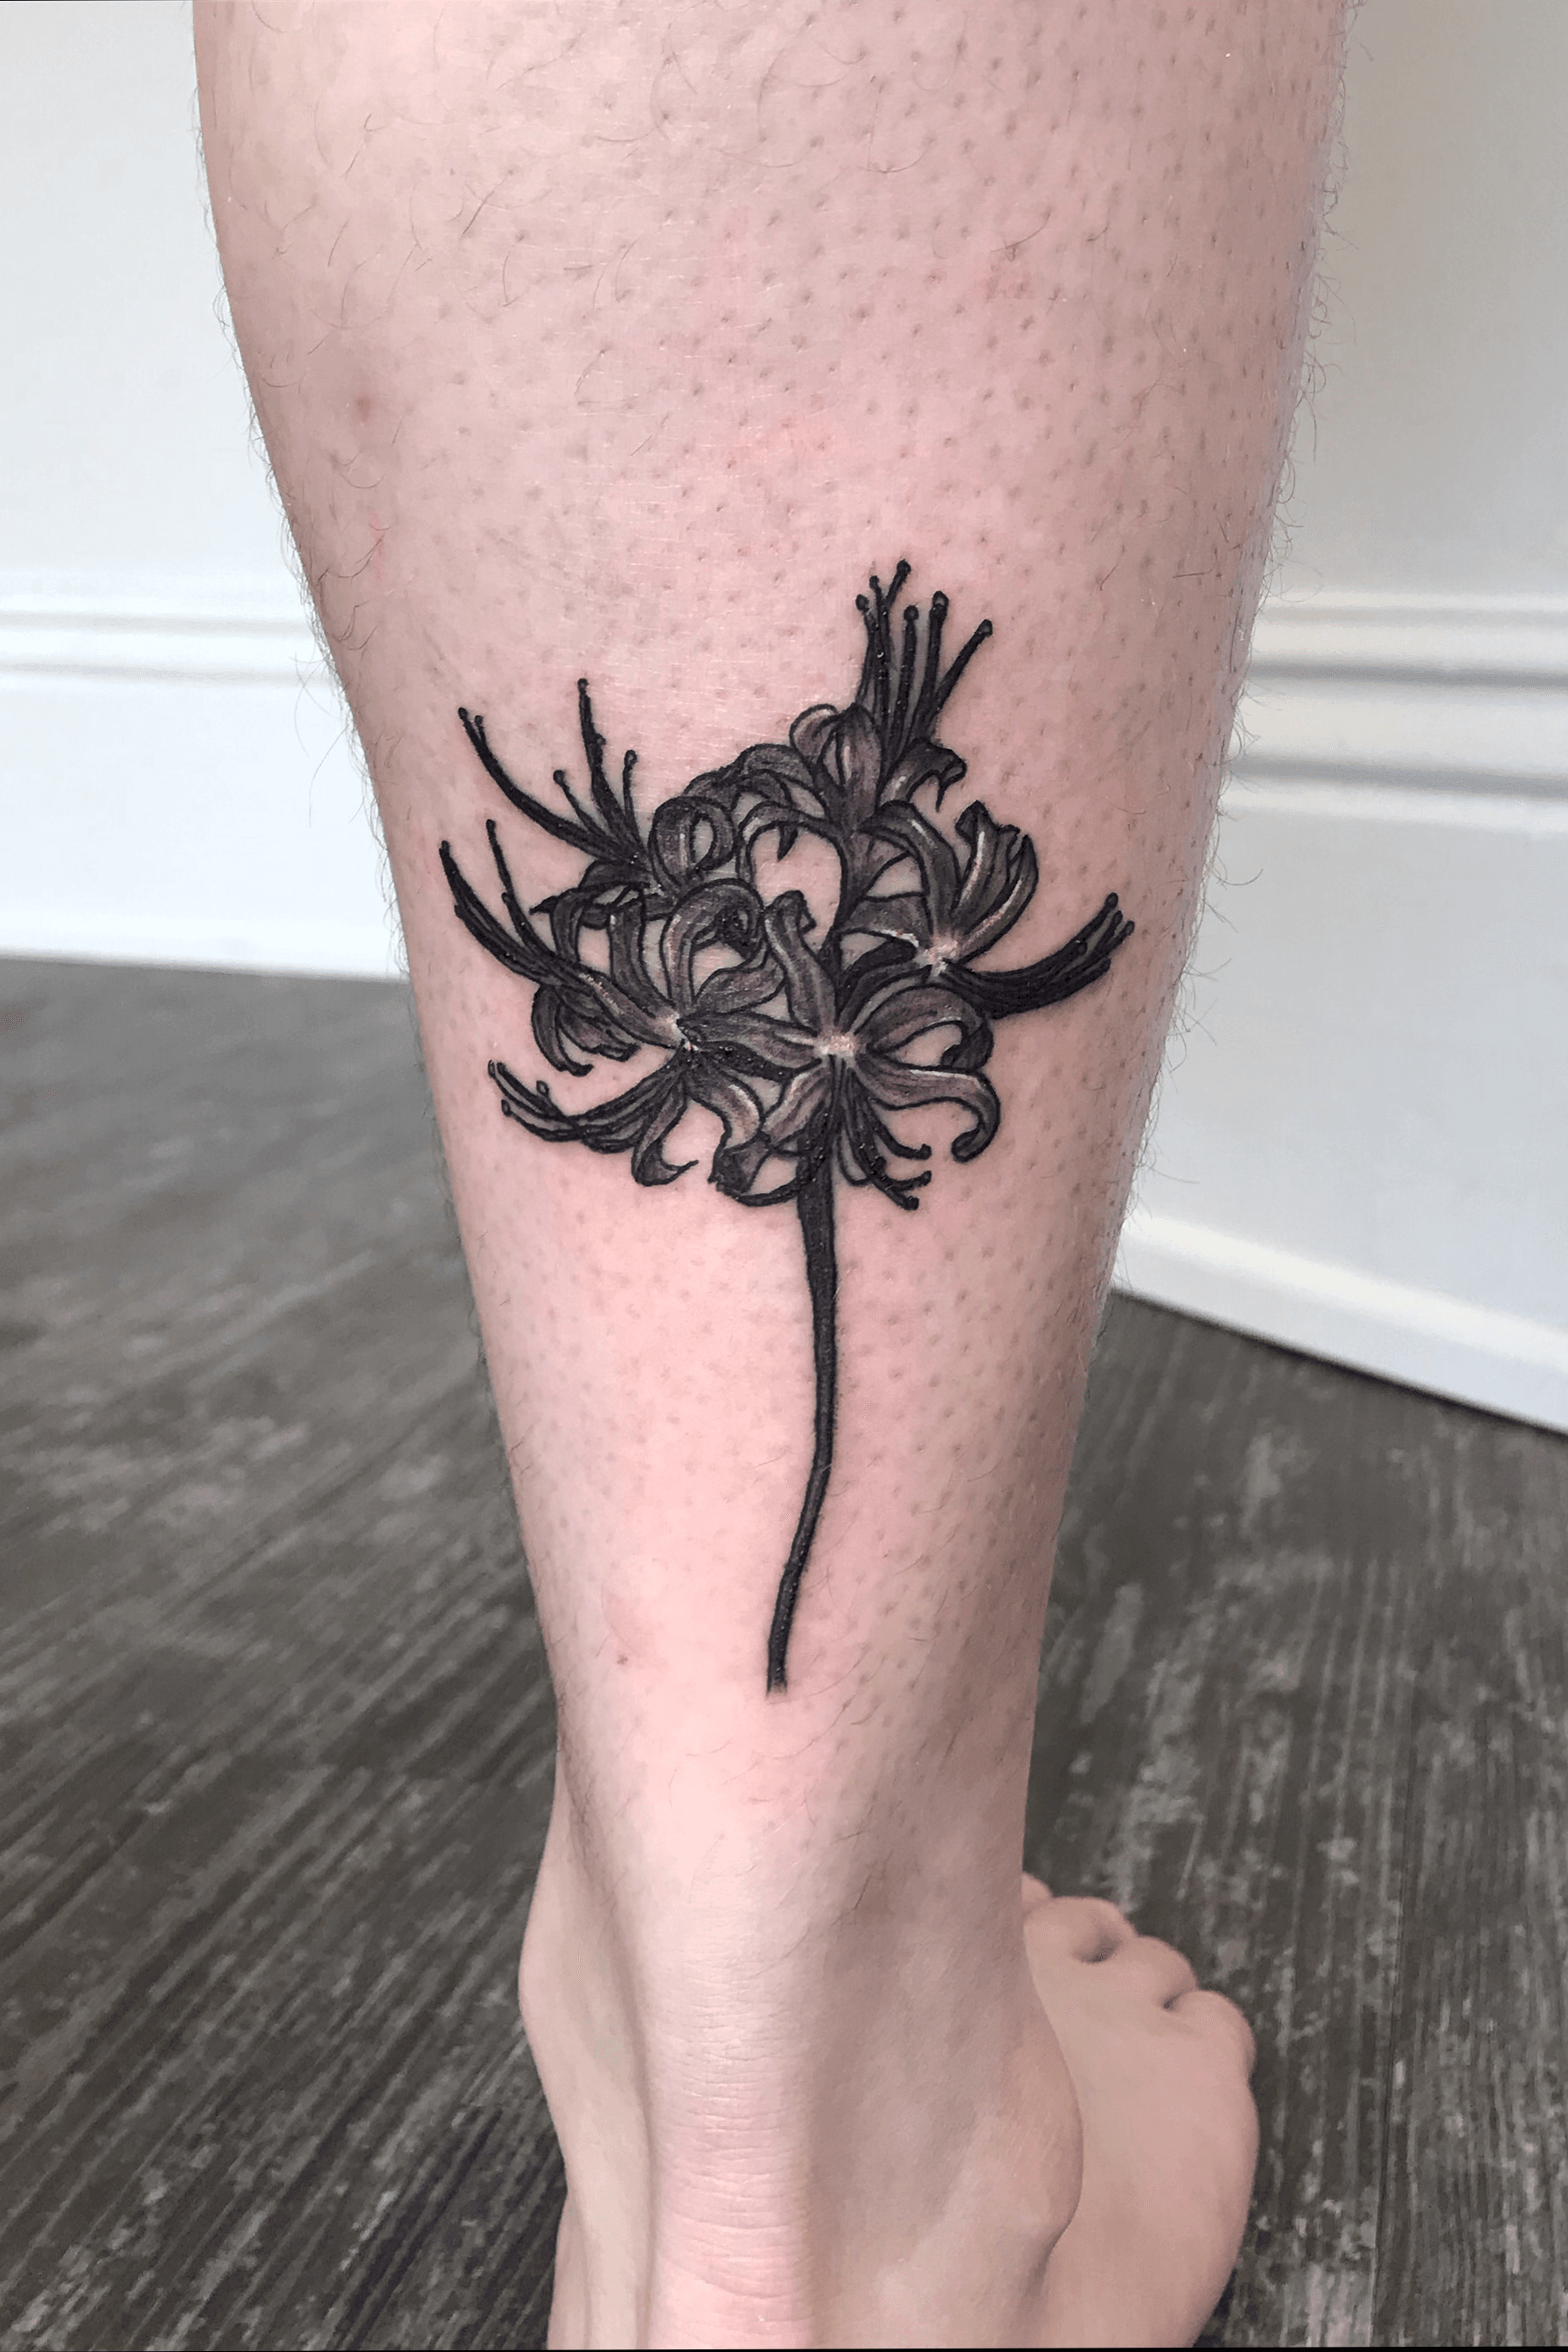 Pin on Spider Flower Tattoos Design Ideas